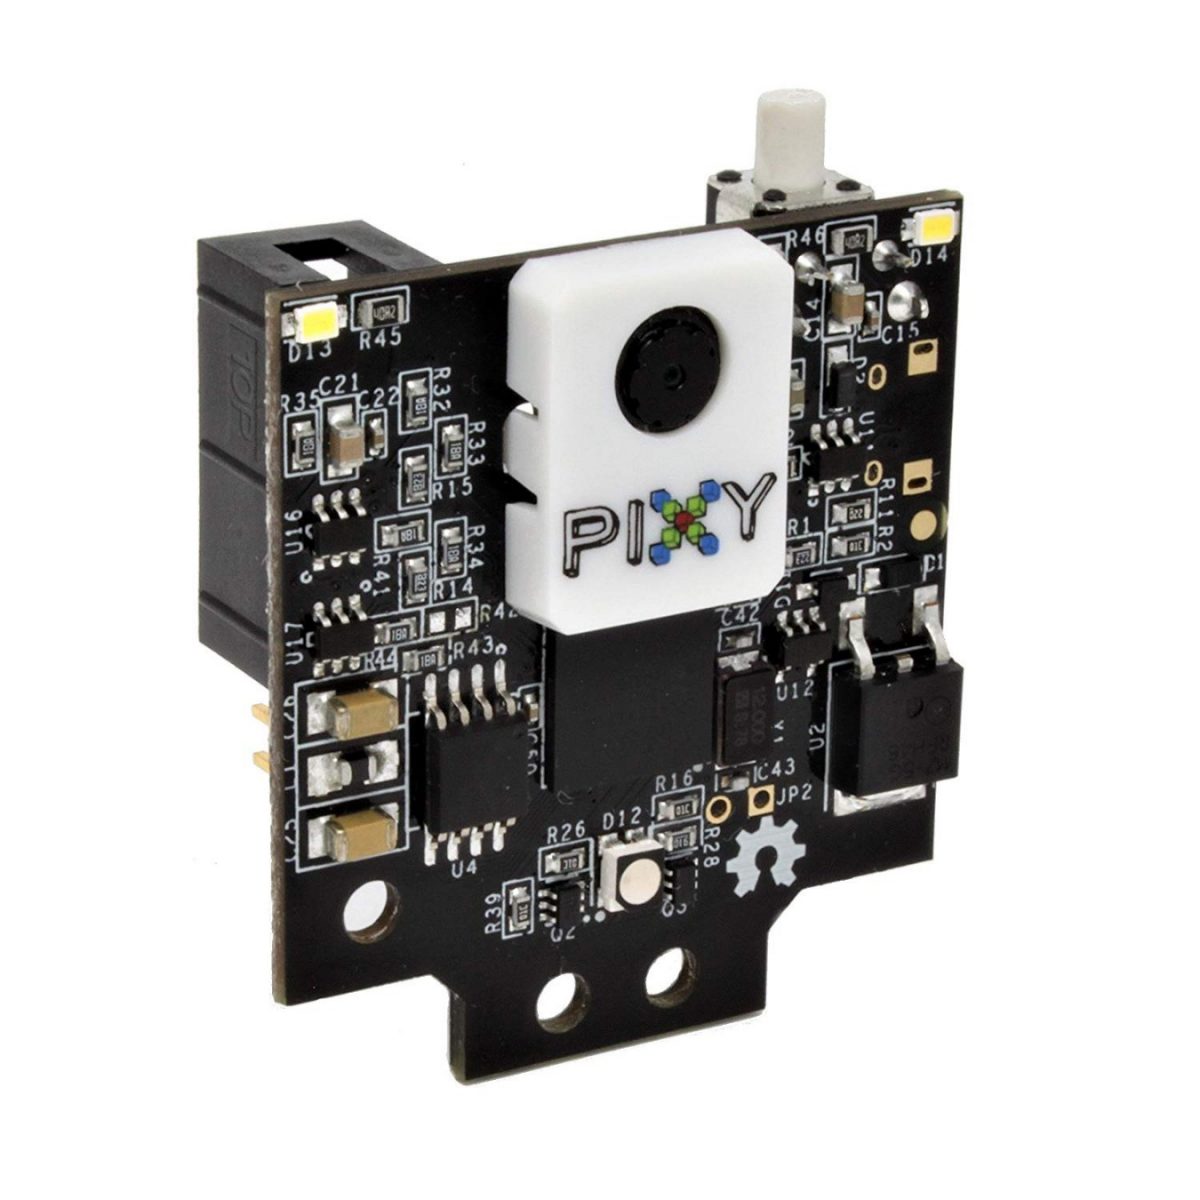 Pixy2 for Mindstorms EV3